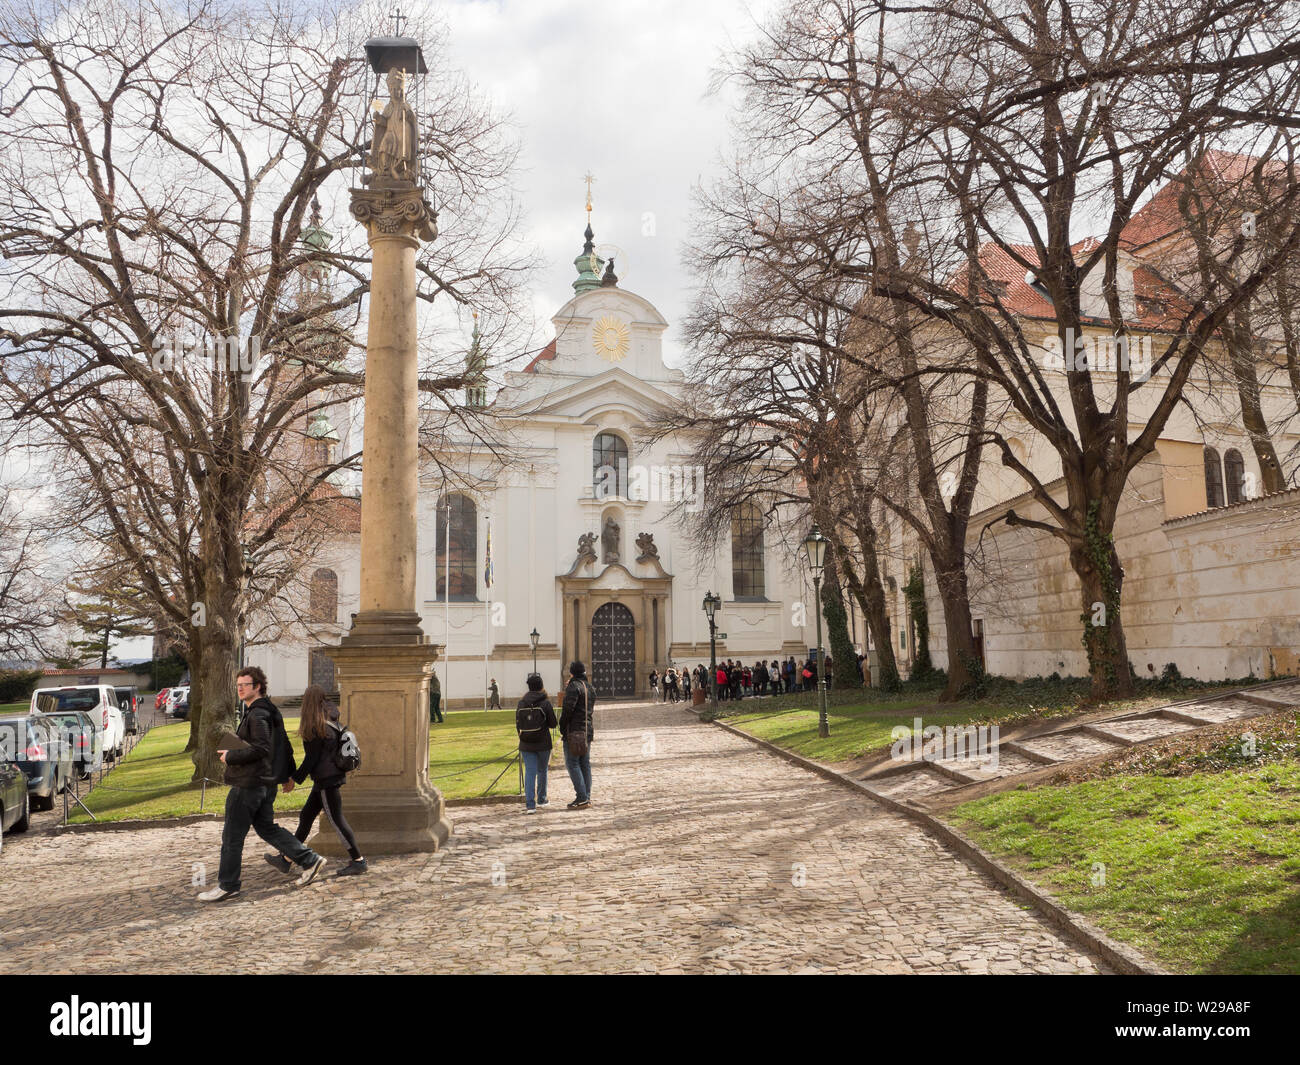 El Monasterio Strahov es una importante atracción turística en Praga, República Checa, aquí la entrada a la iglesia barroca Foto de stock